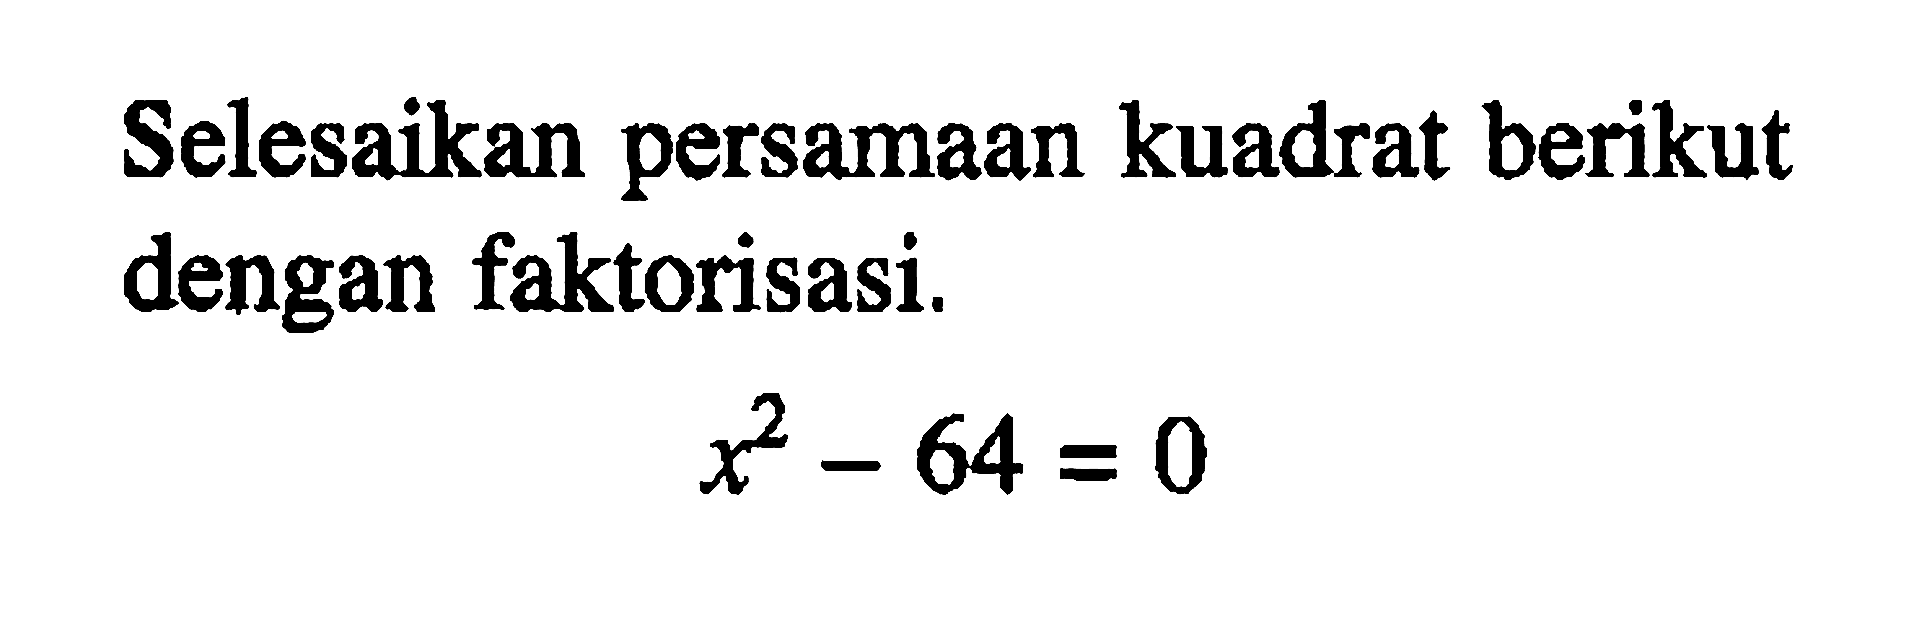 Selesaikan persamaan kuadrat berikut dengan faktorisasi. x^2 - 64 = 0